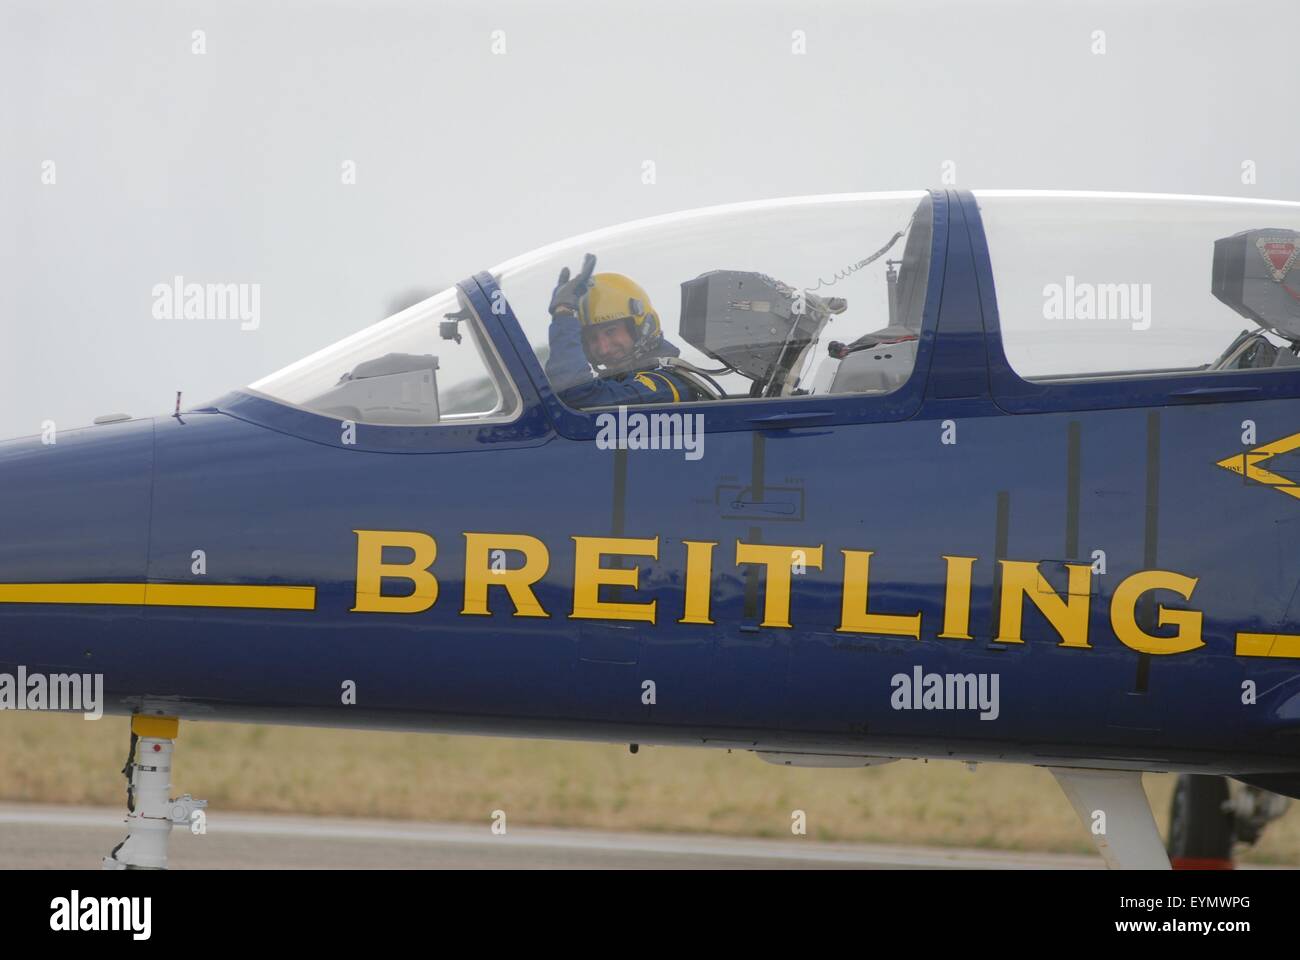 Aria team acrobatico Breitling, con Aero L-39 Albatros aerei,mondo civile solo per i voli in formazione jet bimotore aeromobile Foto Stock